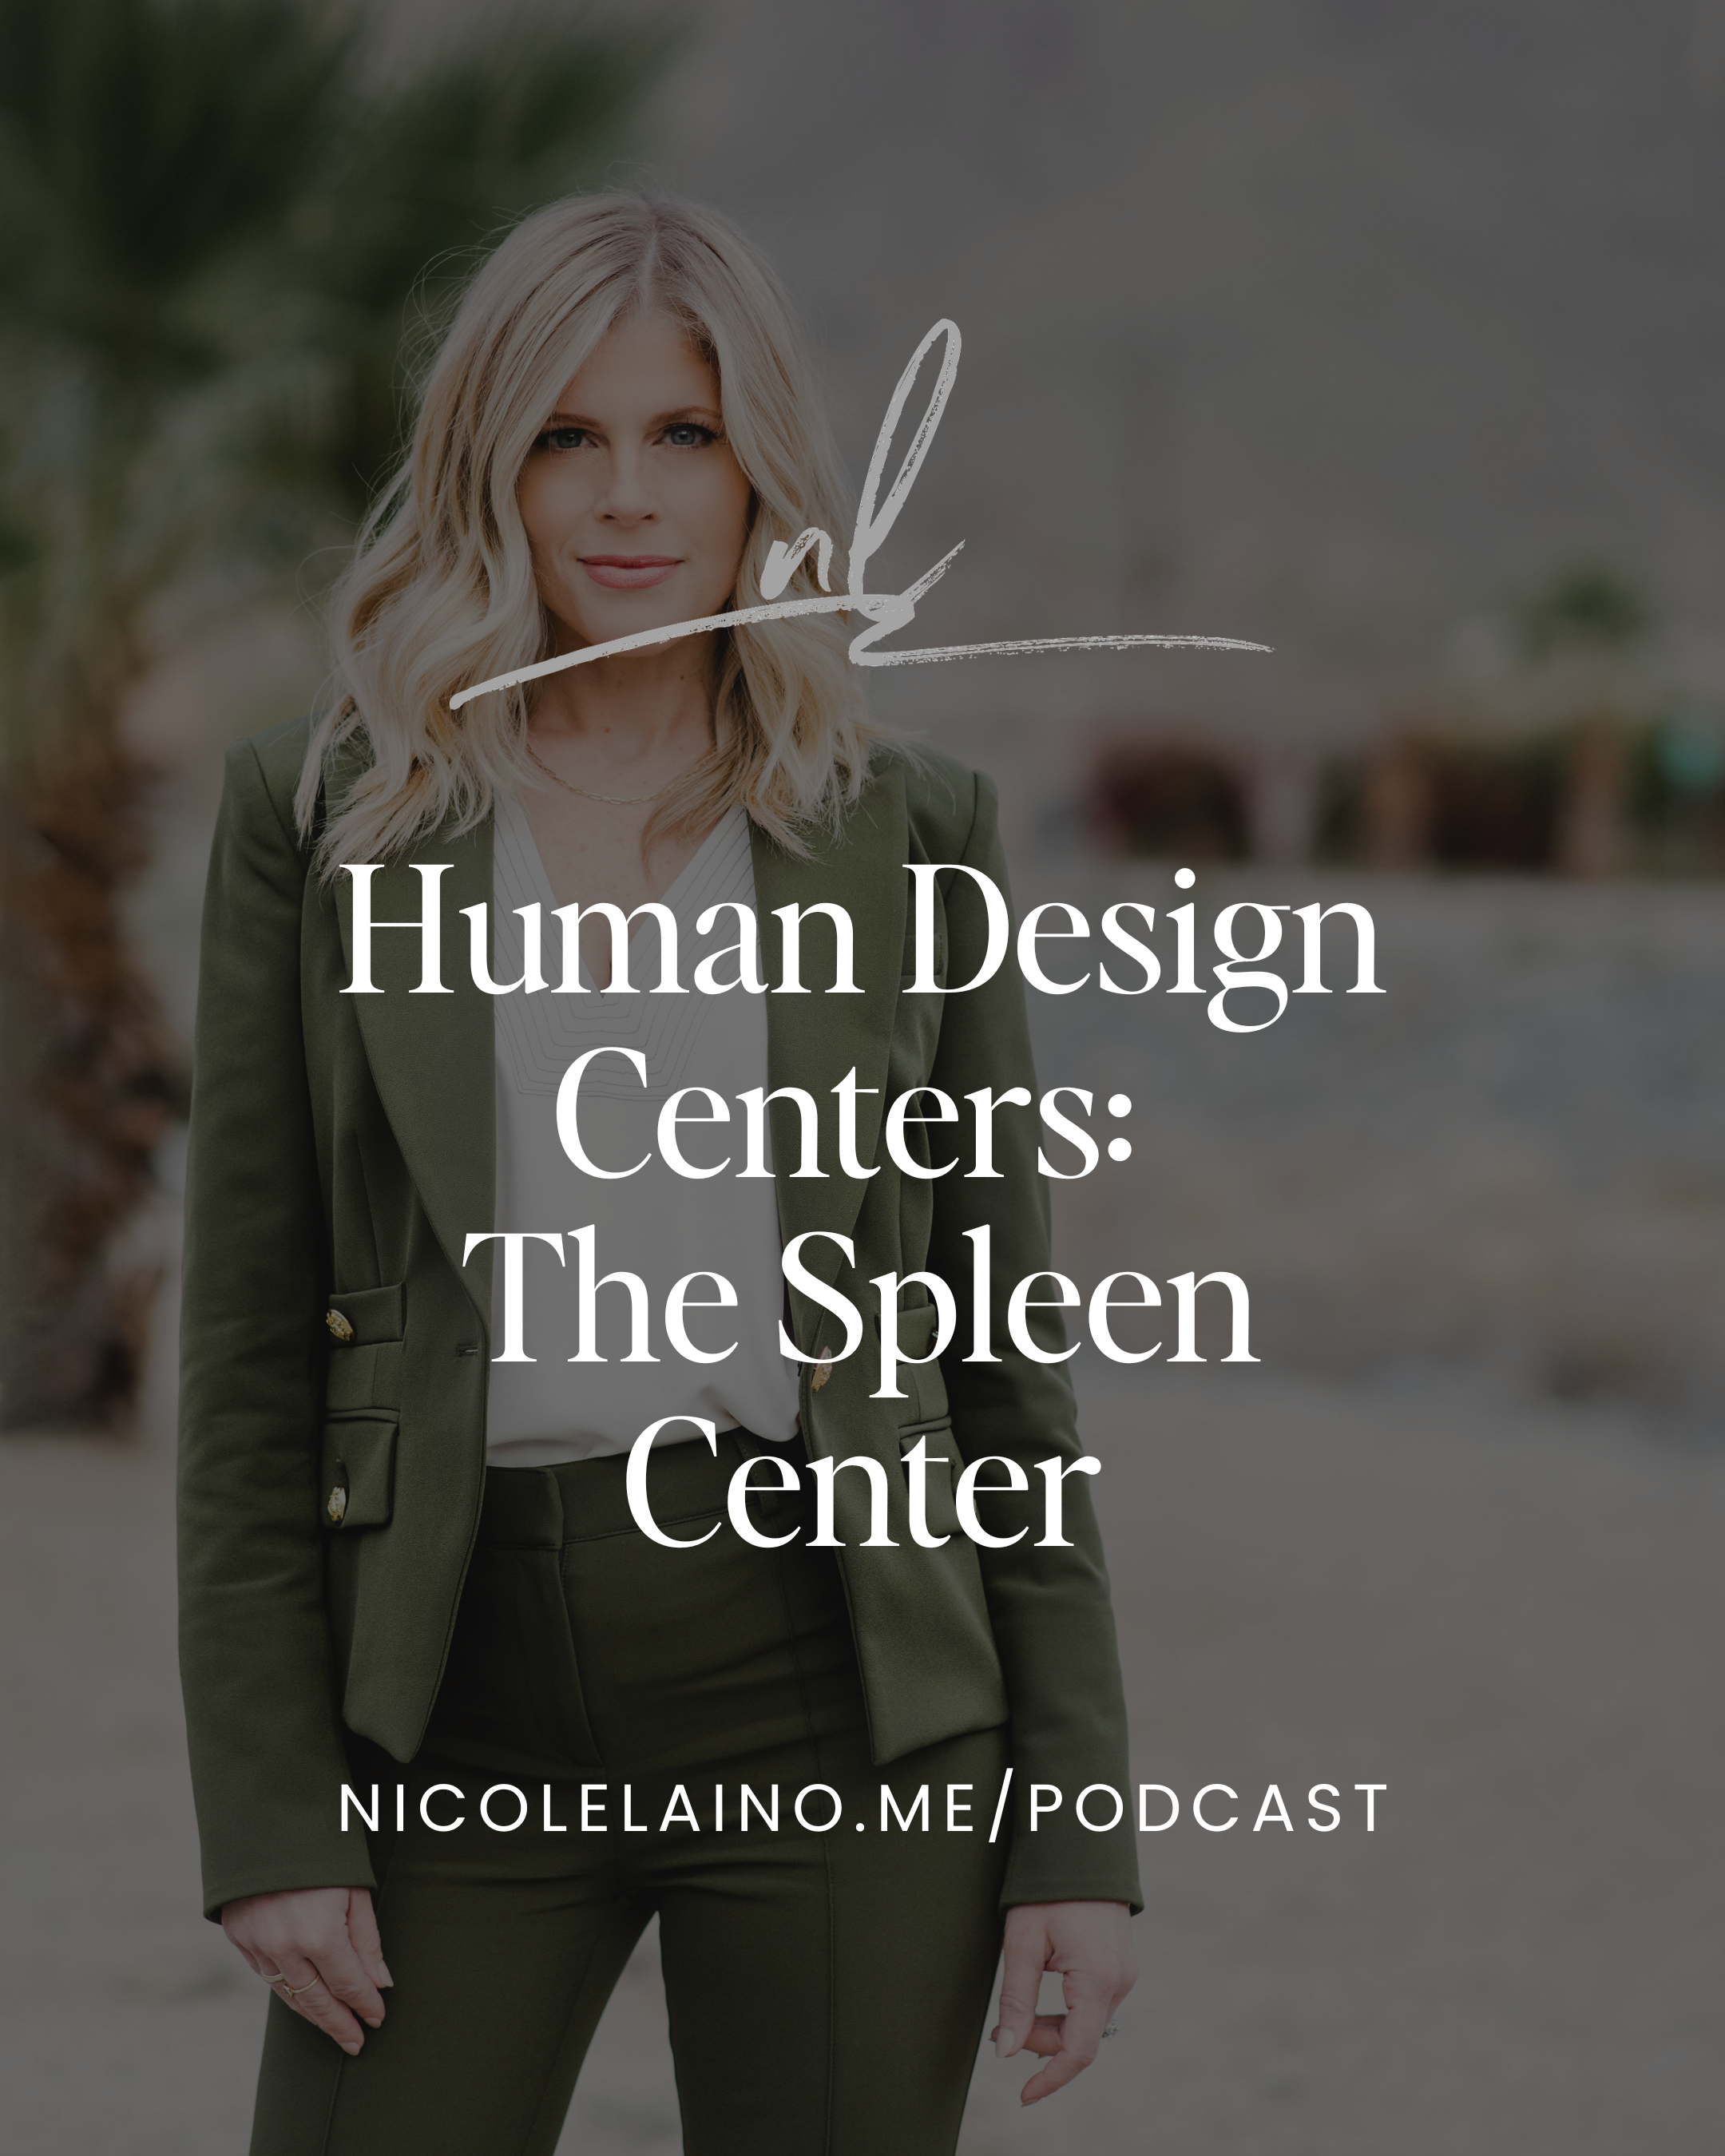 Human Design Centers: The Spleen Center